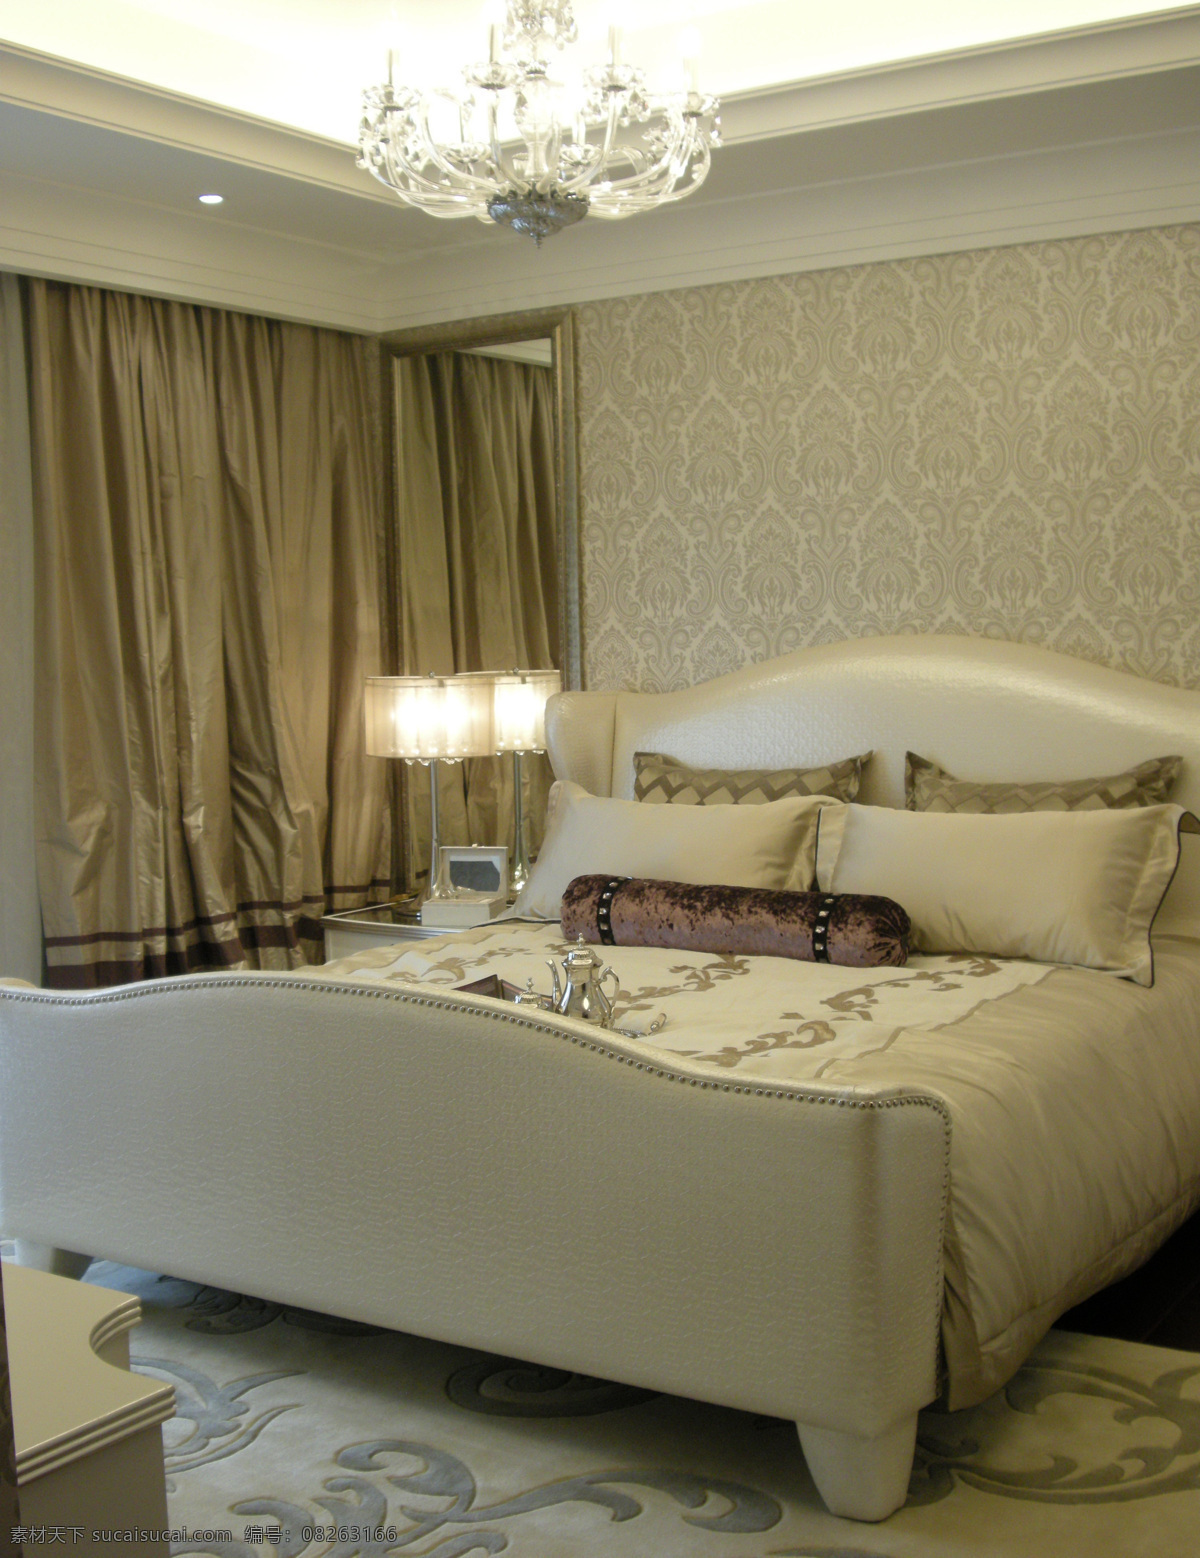 欧式 卧室 透明 玻璃 吊灯 室内装修 效果图 卧室装修 皮质床头 白色透明吊灯 金色台灯